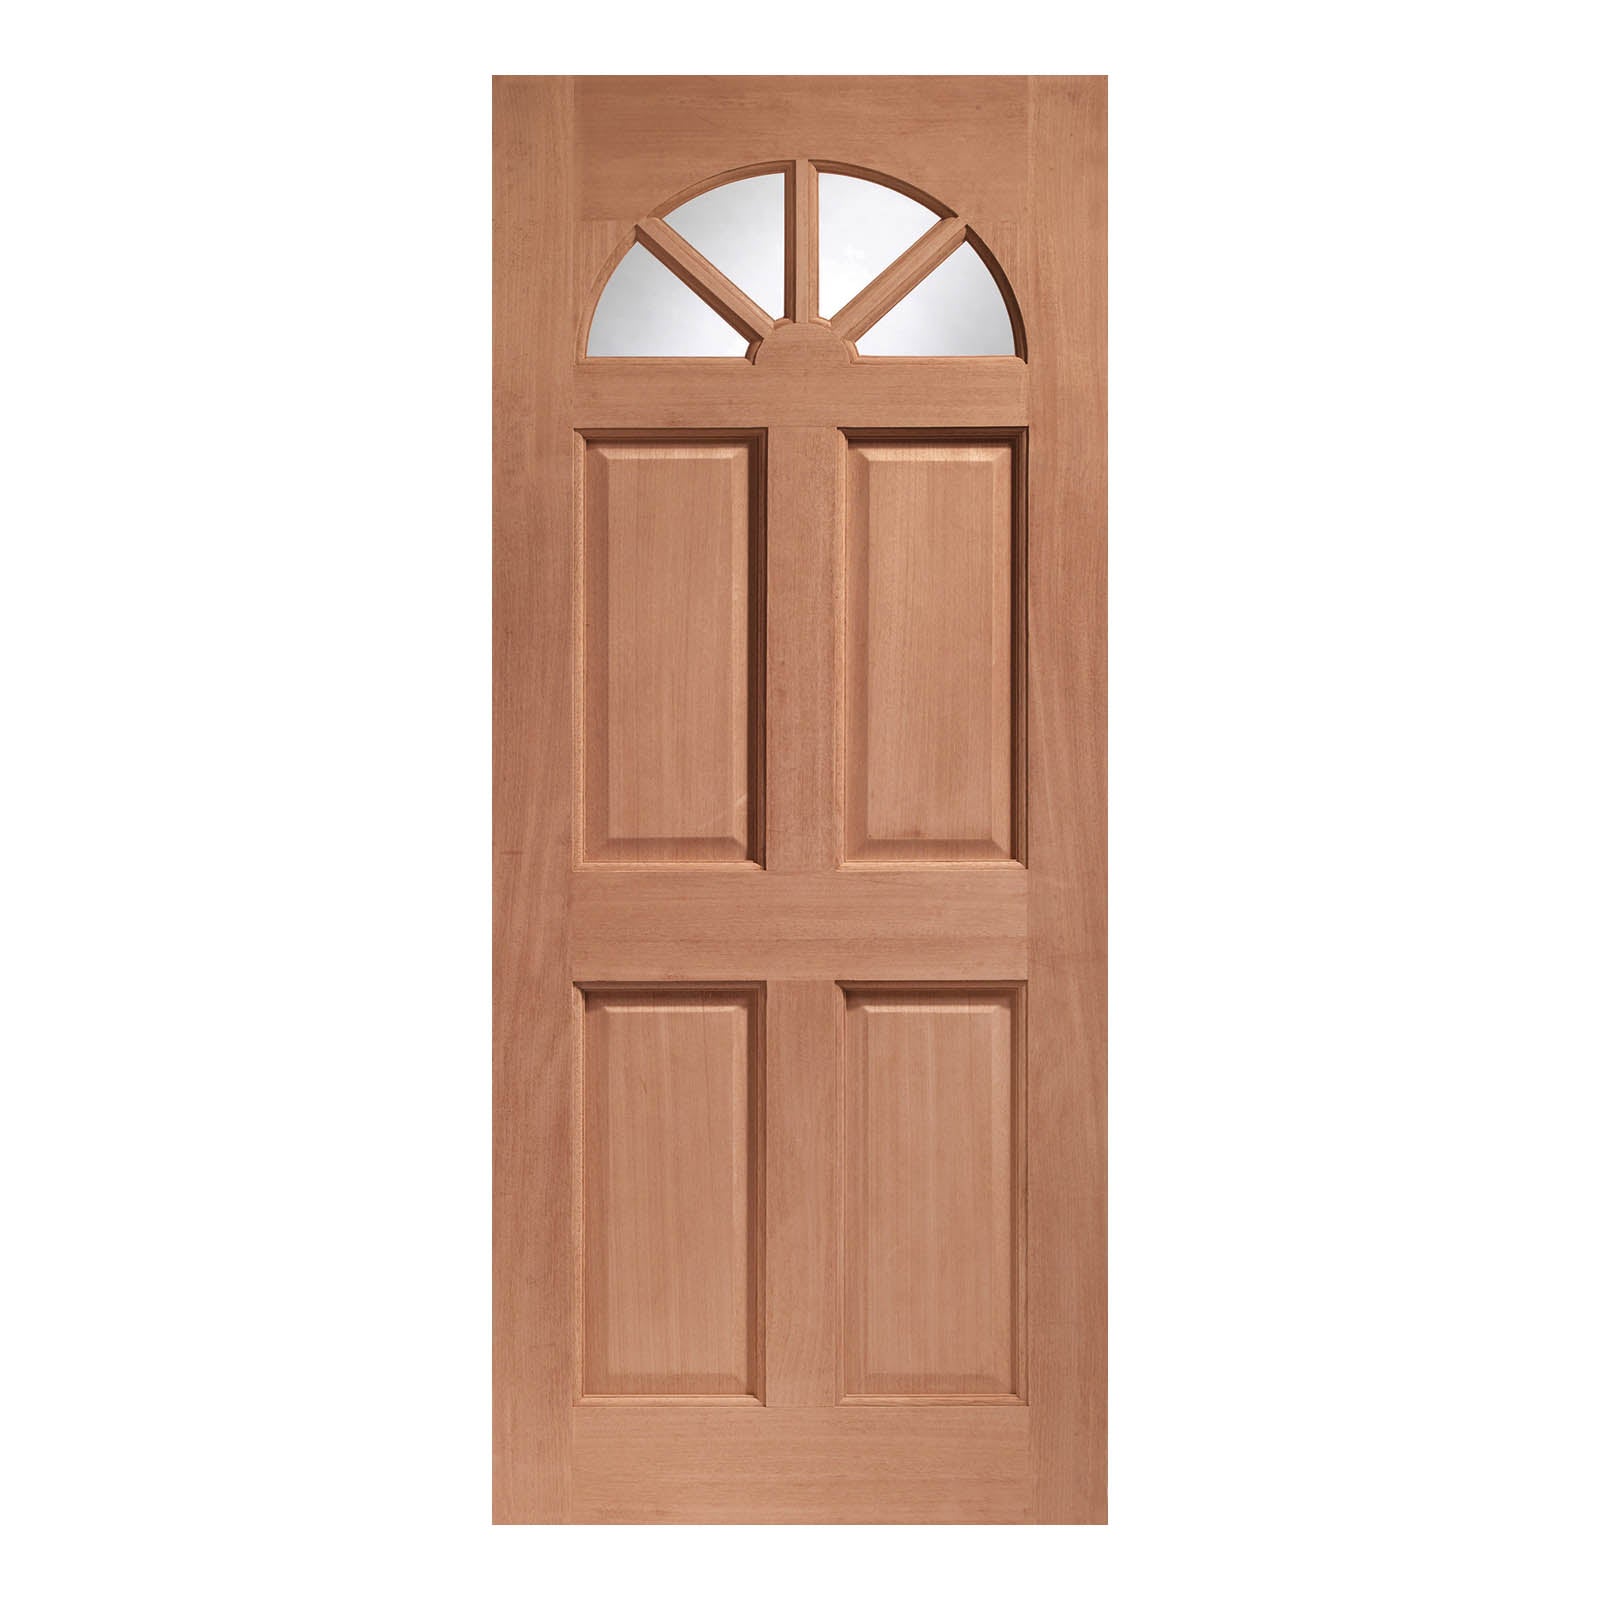 External Hardwood Carolina Door with Single Clear Glass